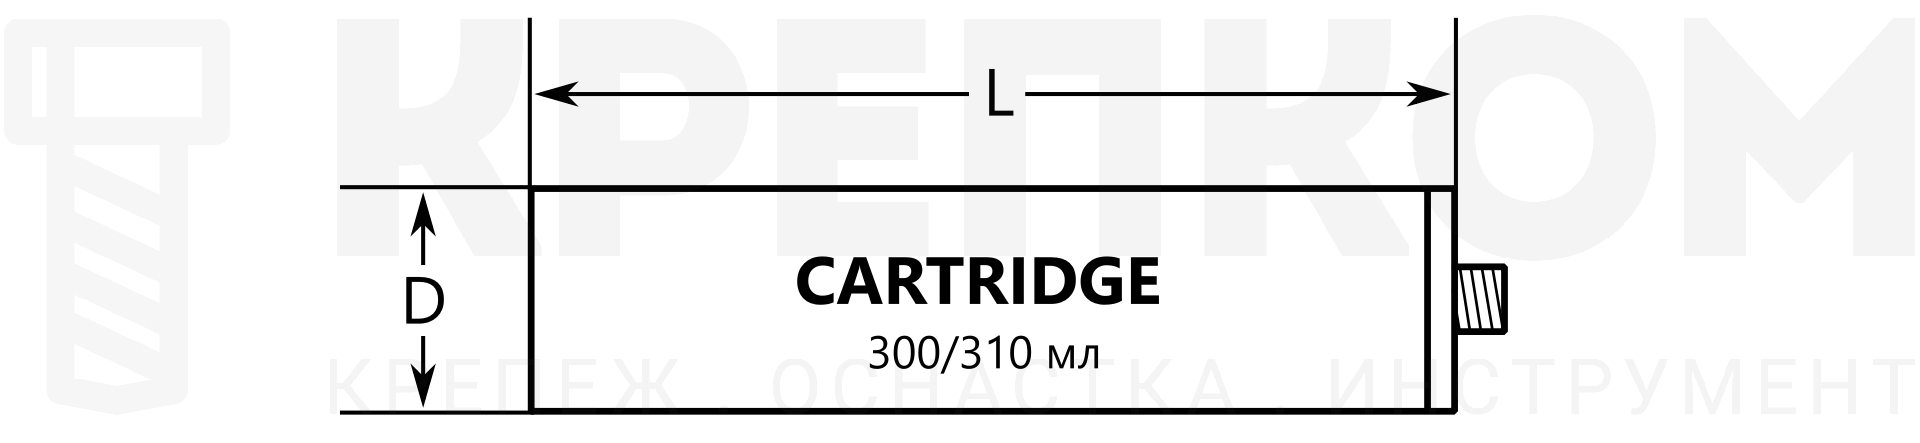 Картридж 310 мл для пистолета, схема и размеры